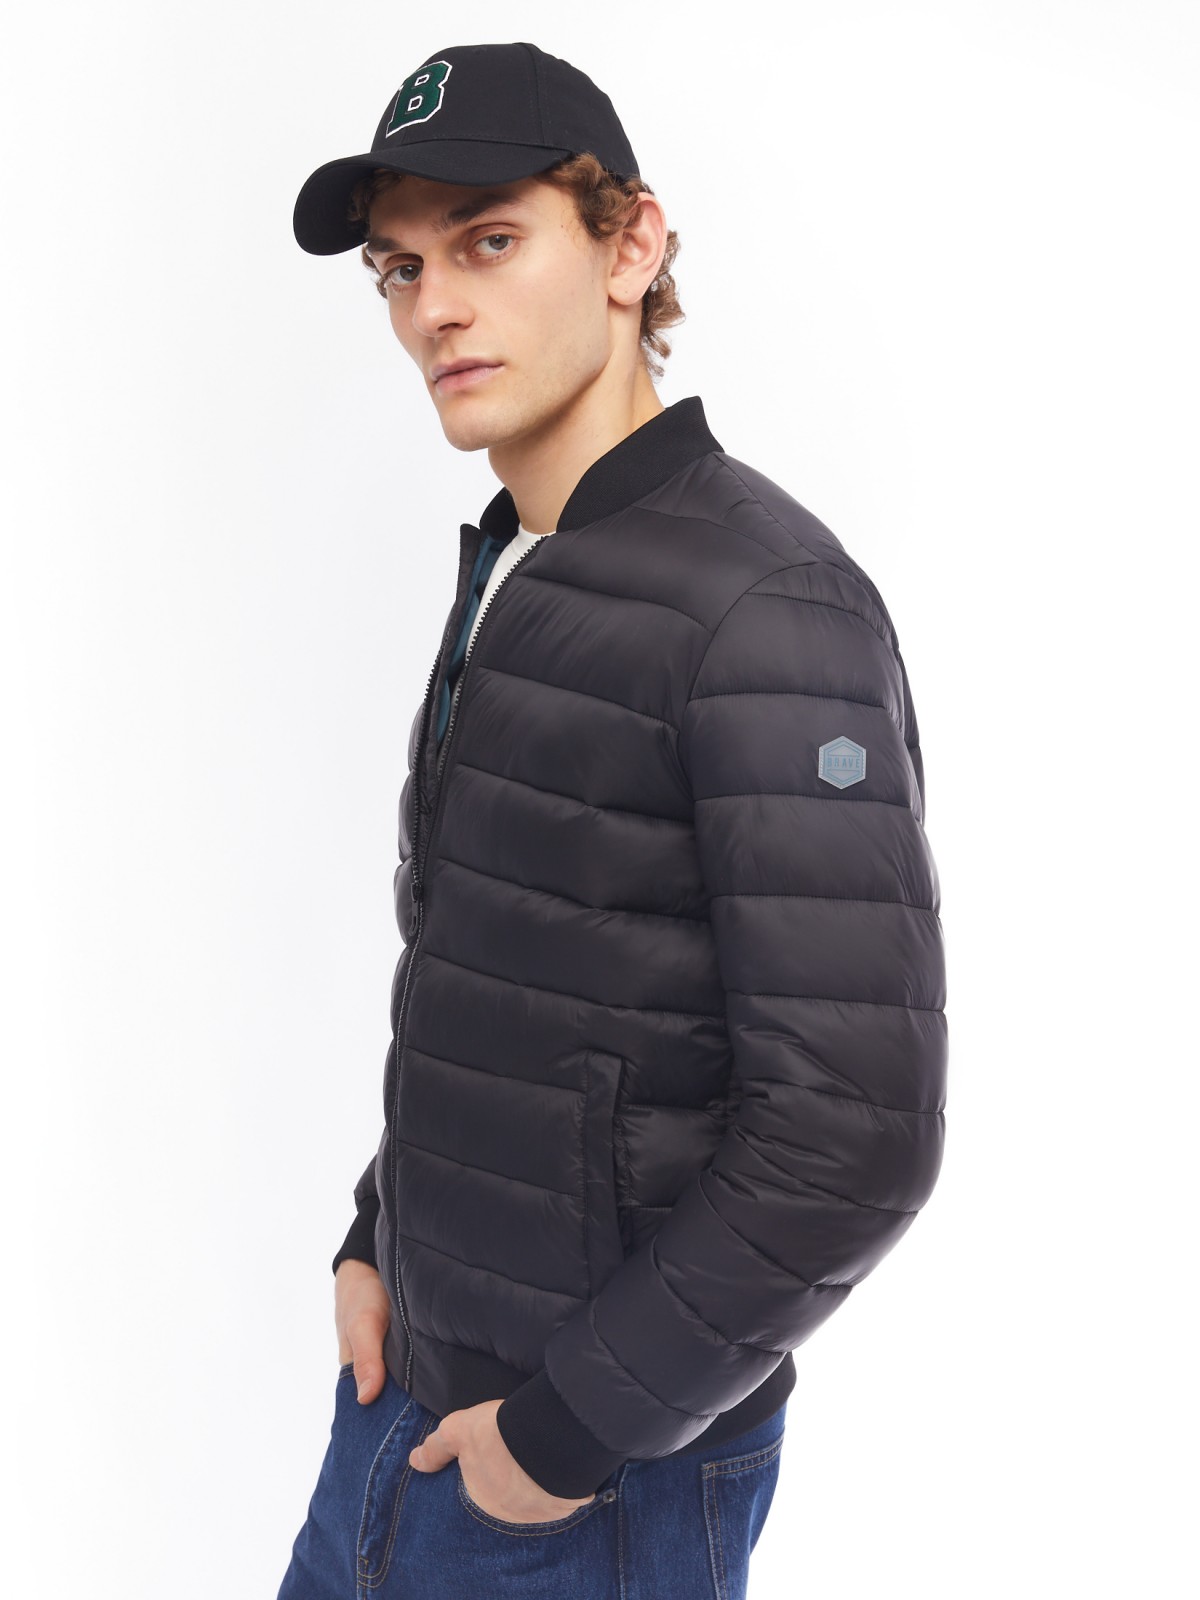 Лёгкая утеплённая куртка-бомбер с воротником-стойкой zolla 014125102094, цвет черный, размер S